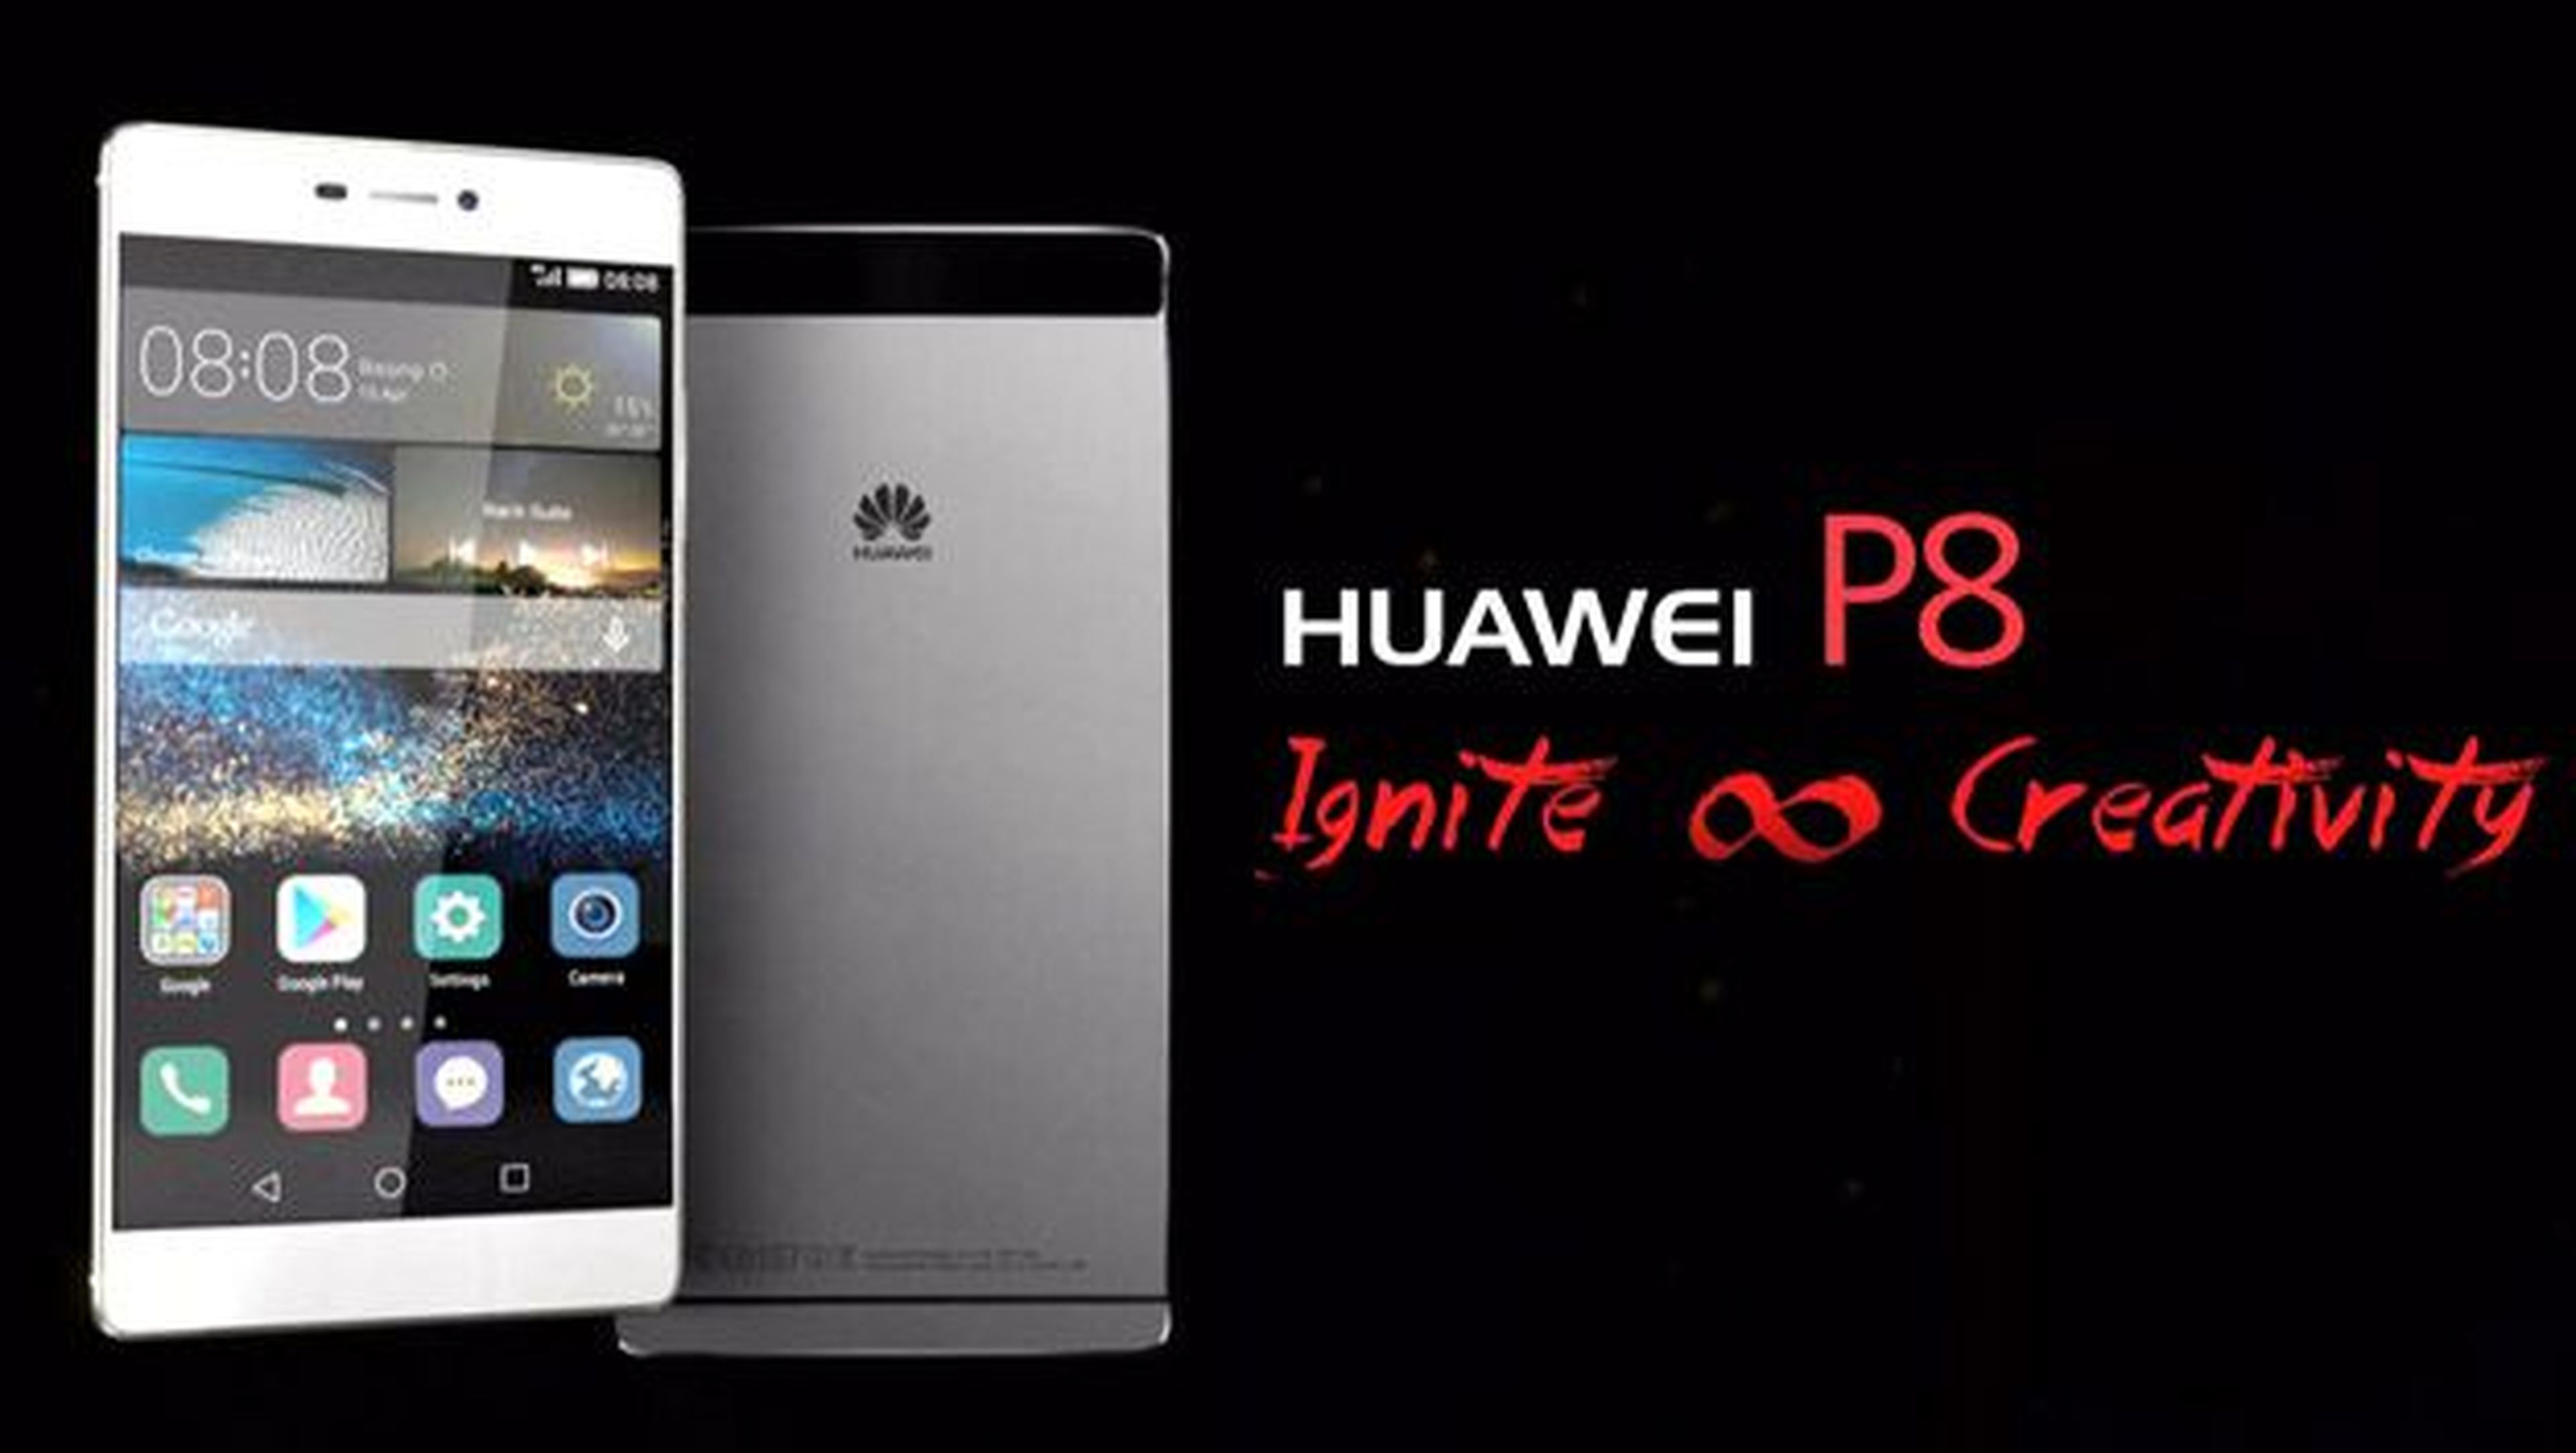 Huawei P8 oferta móviles huawei